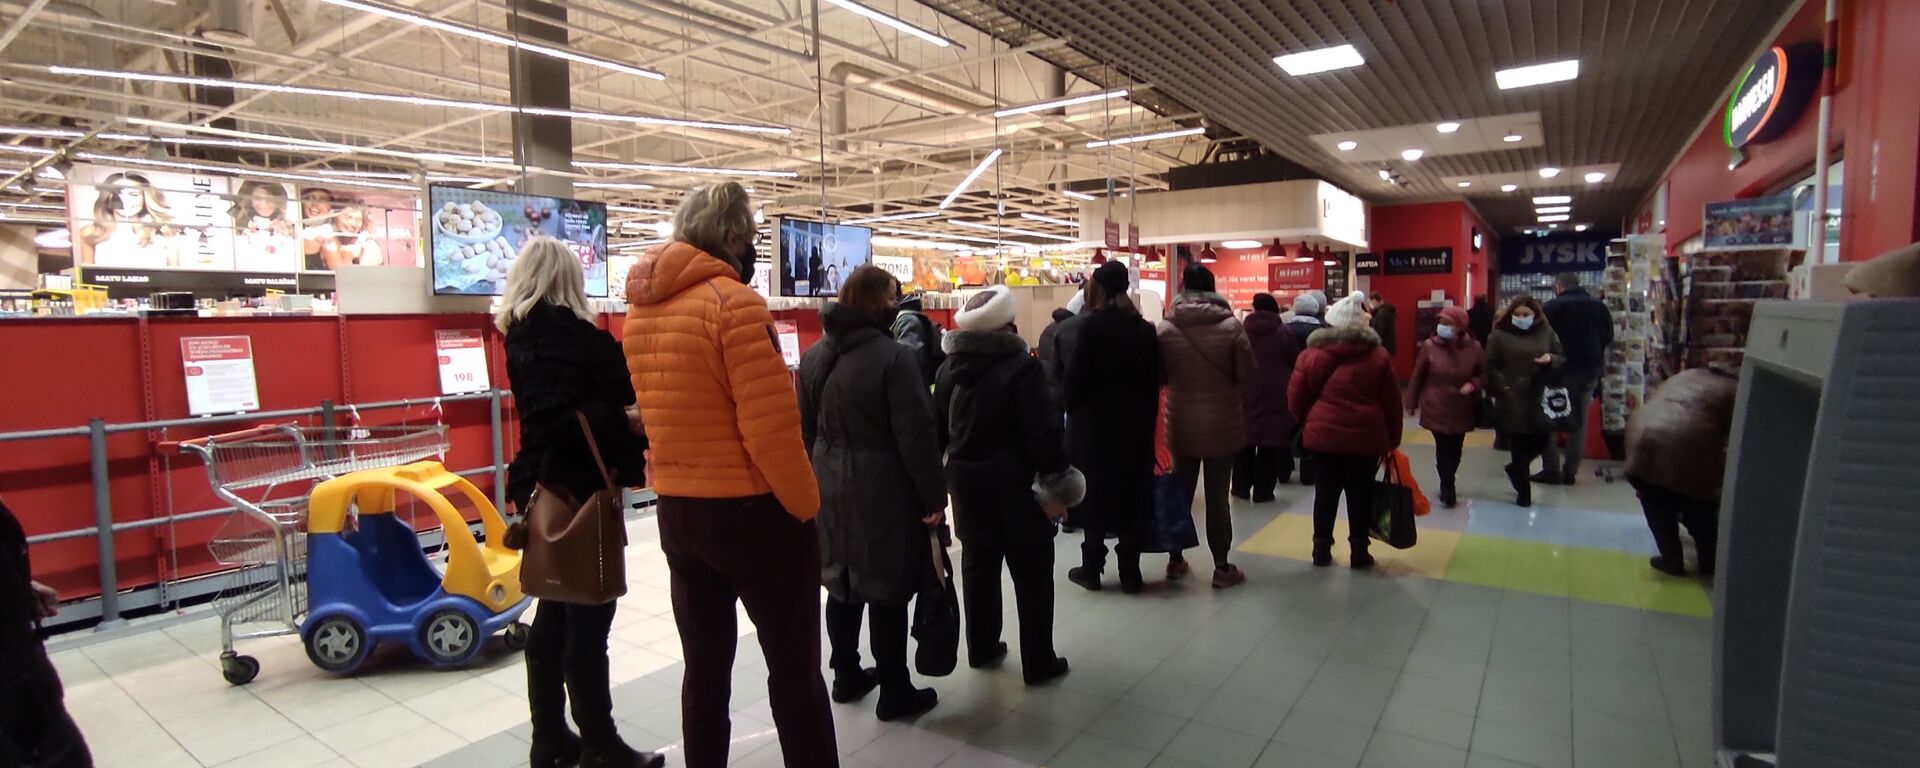 Очередь на вход в торговый зал супермаркета Rimi в Риге - Sputnik Latvija, 1920, 02.04.2021